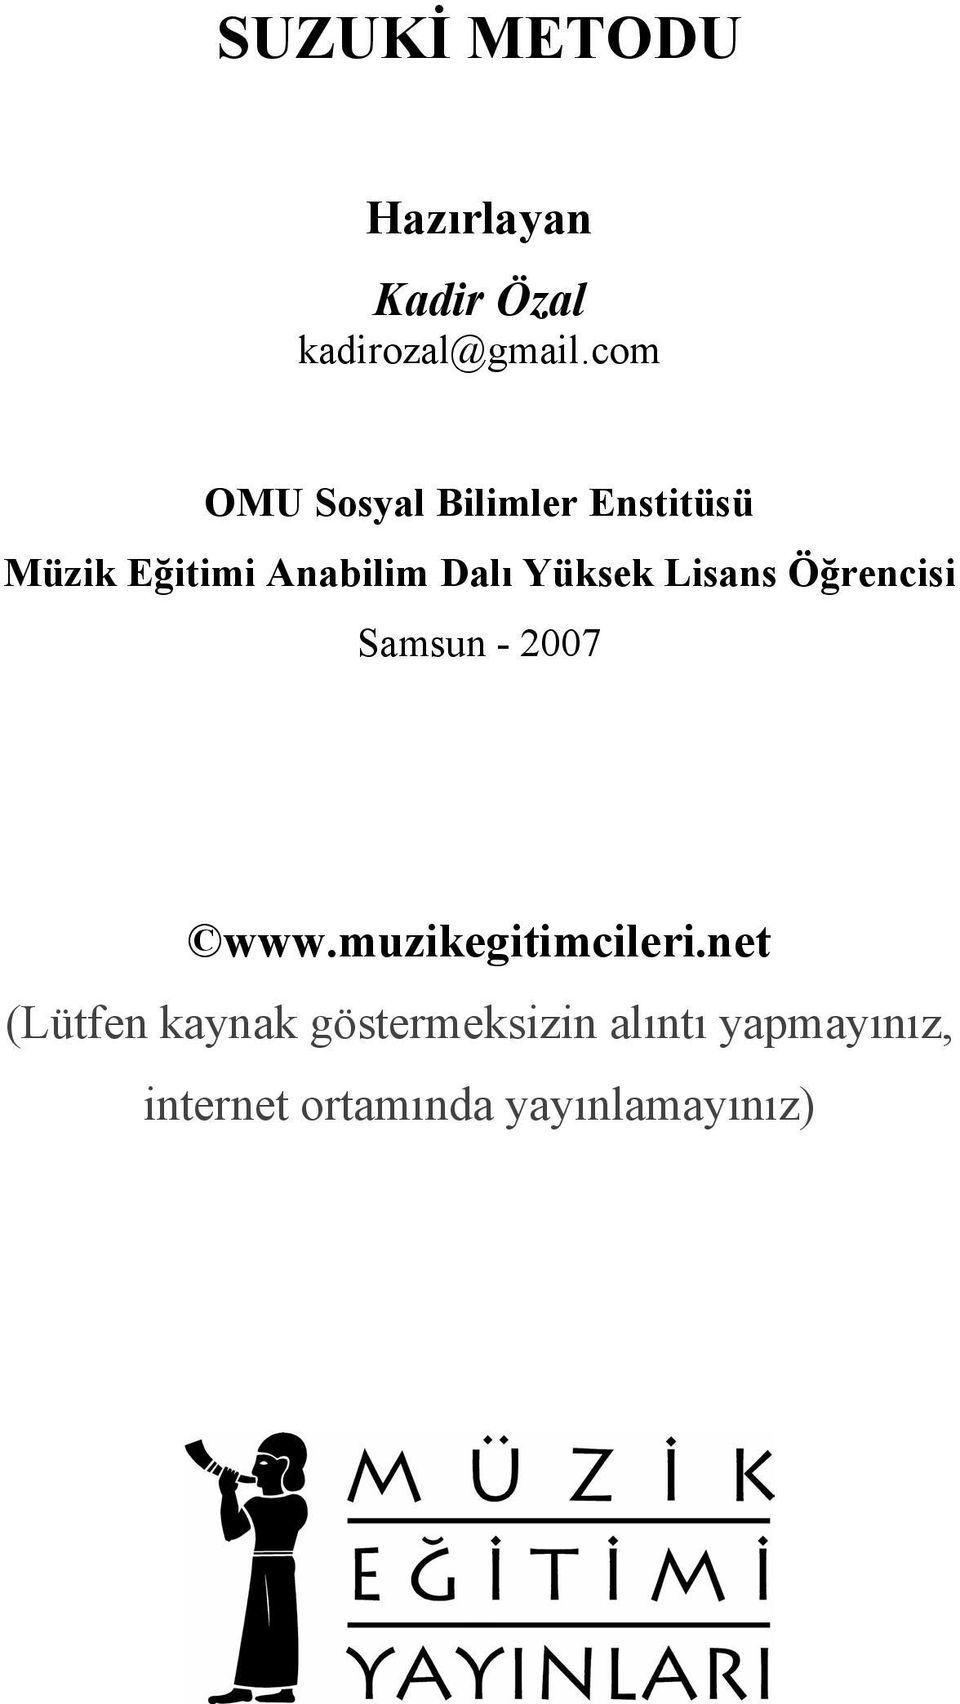 Yüksek Lisans Öğrencisi Samsun - 2007 www.muzikegitimcileri.